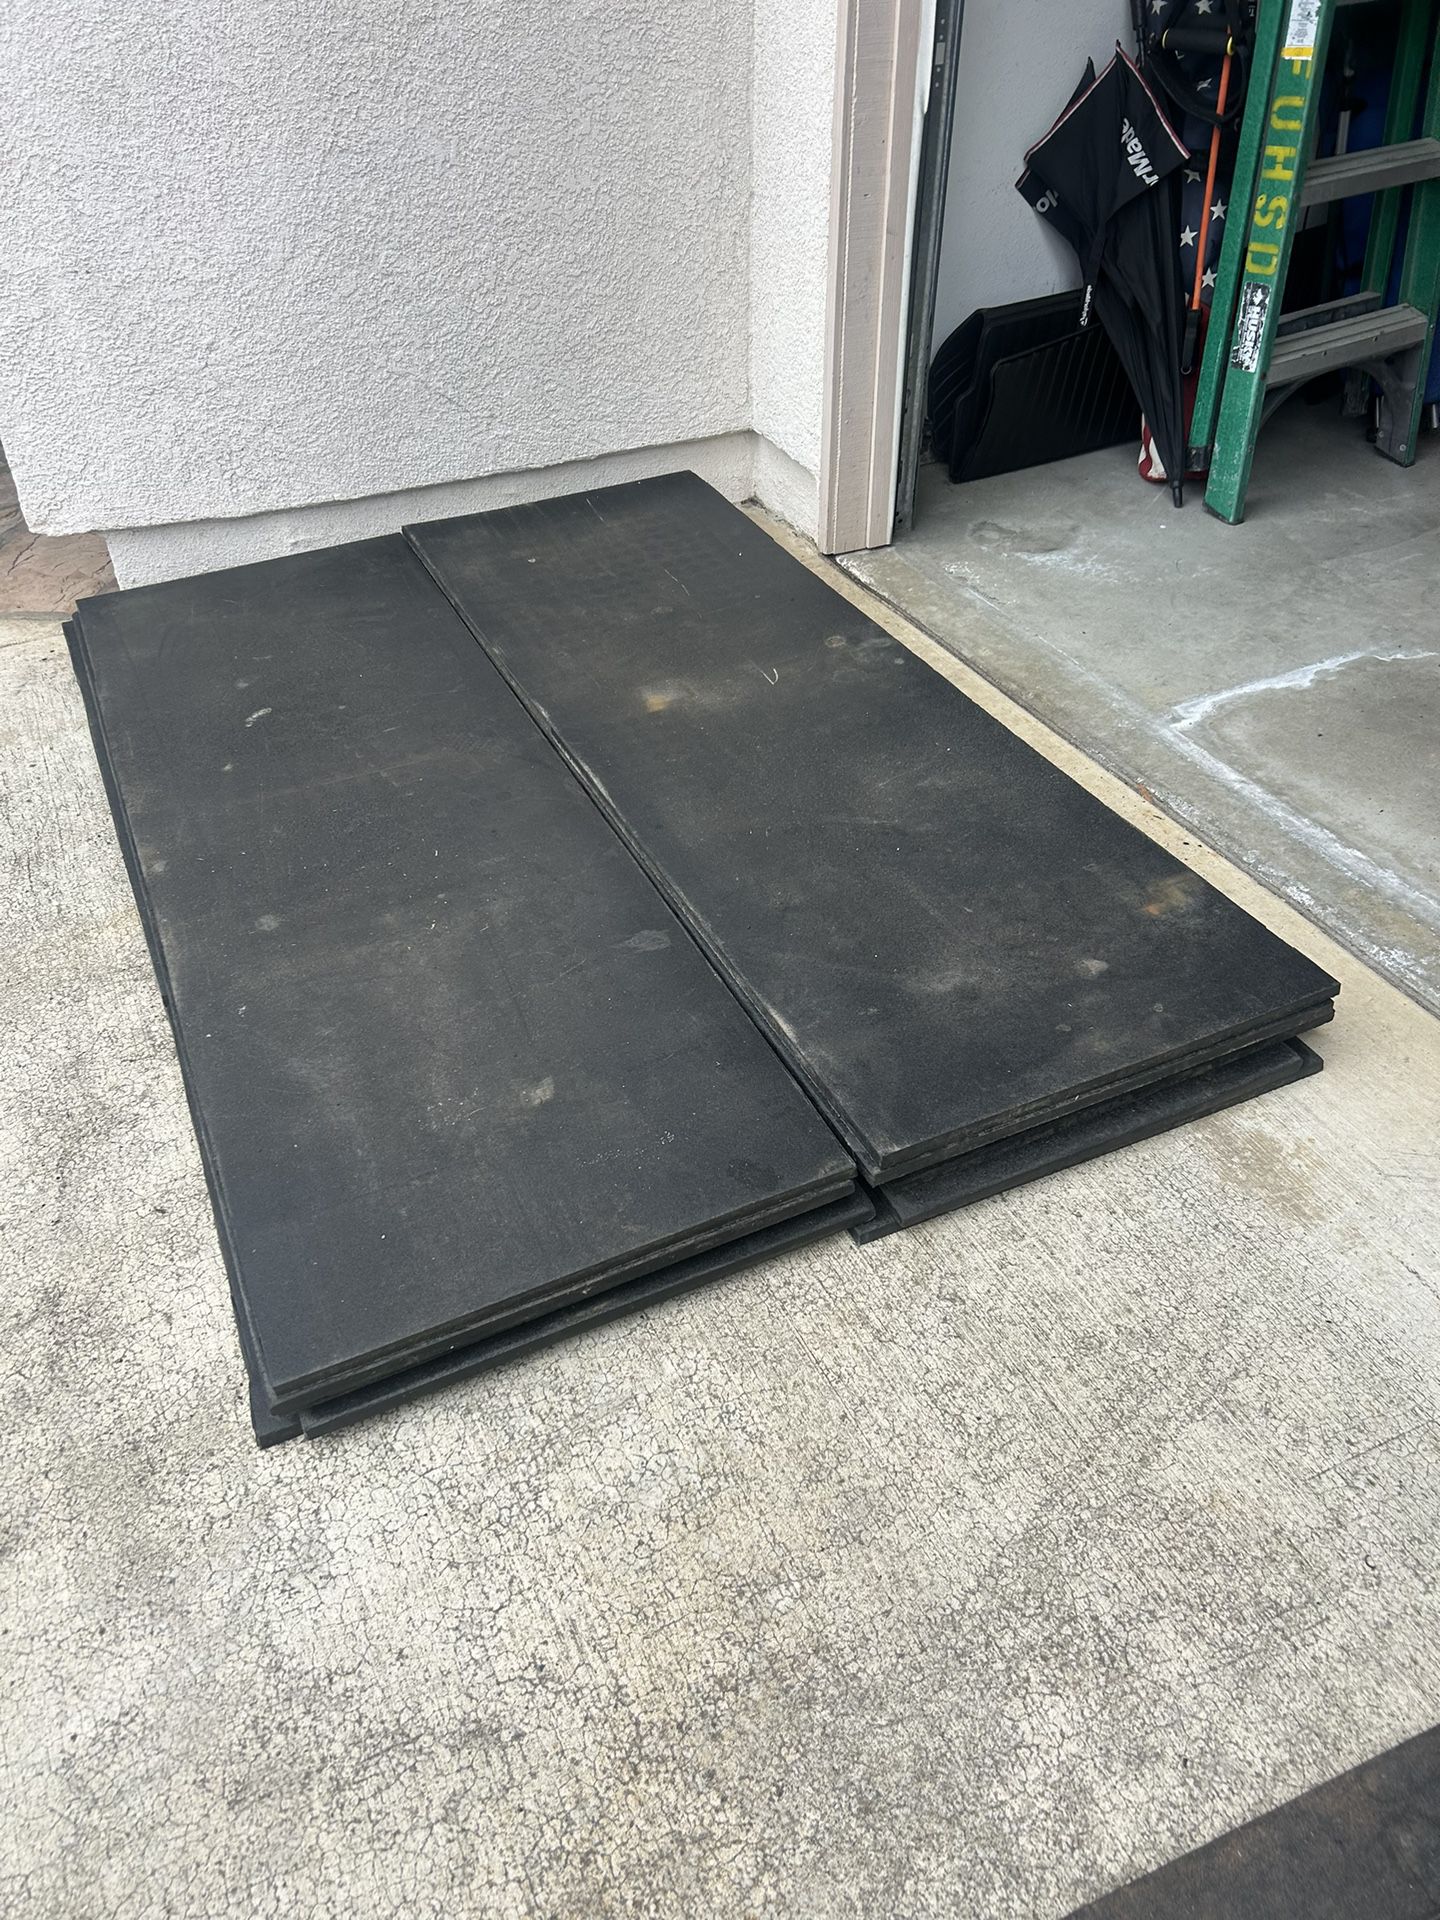 Rubber flooring mats